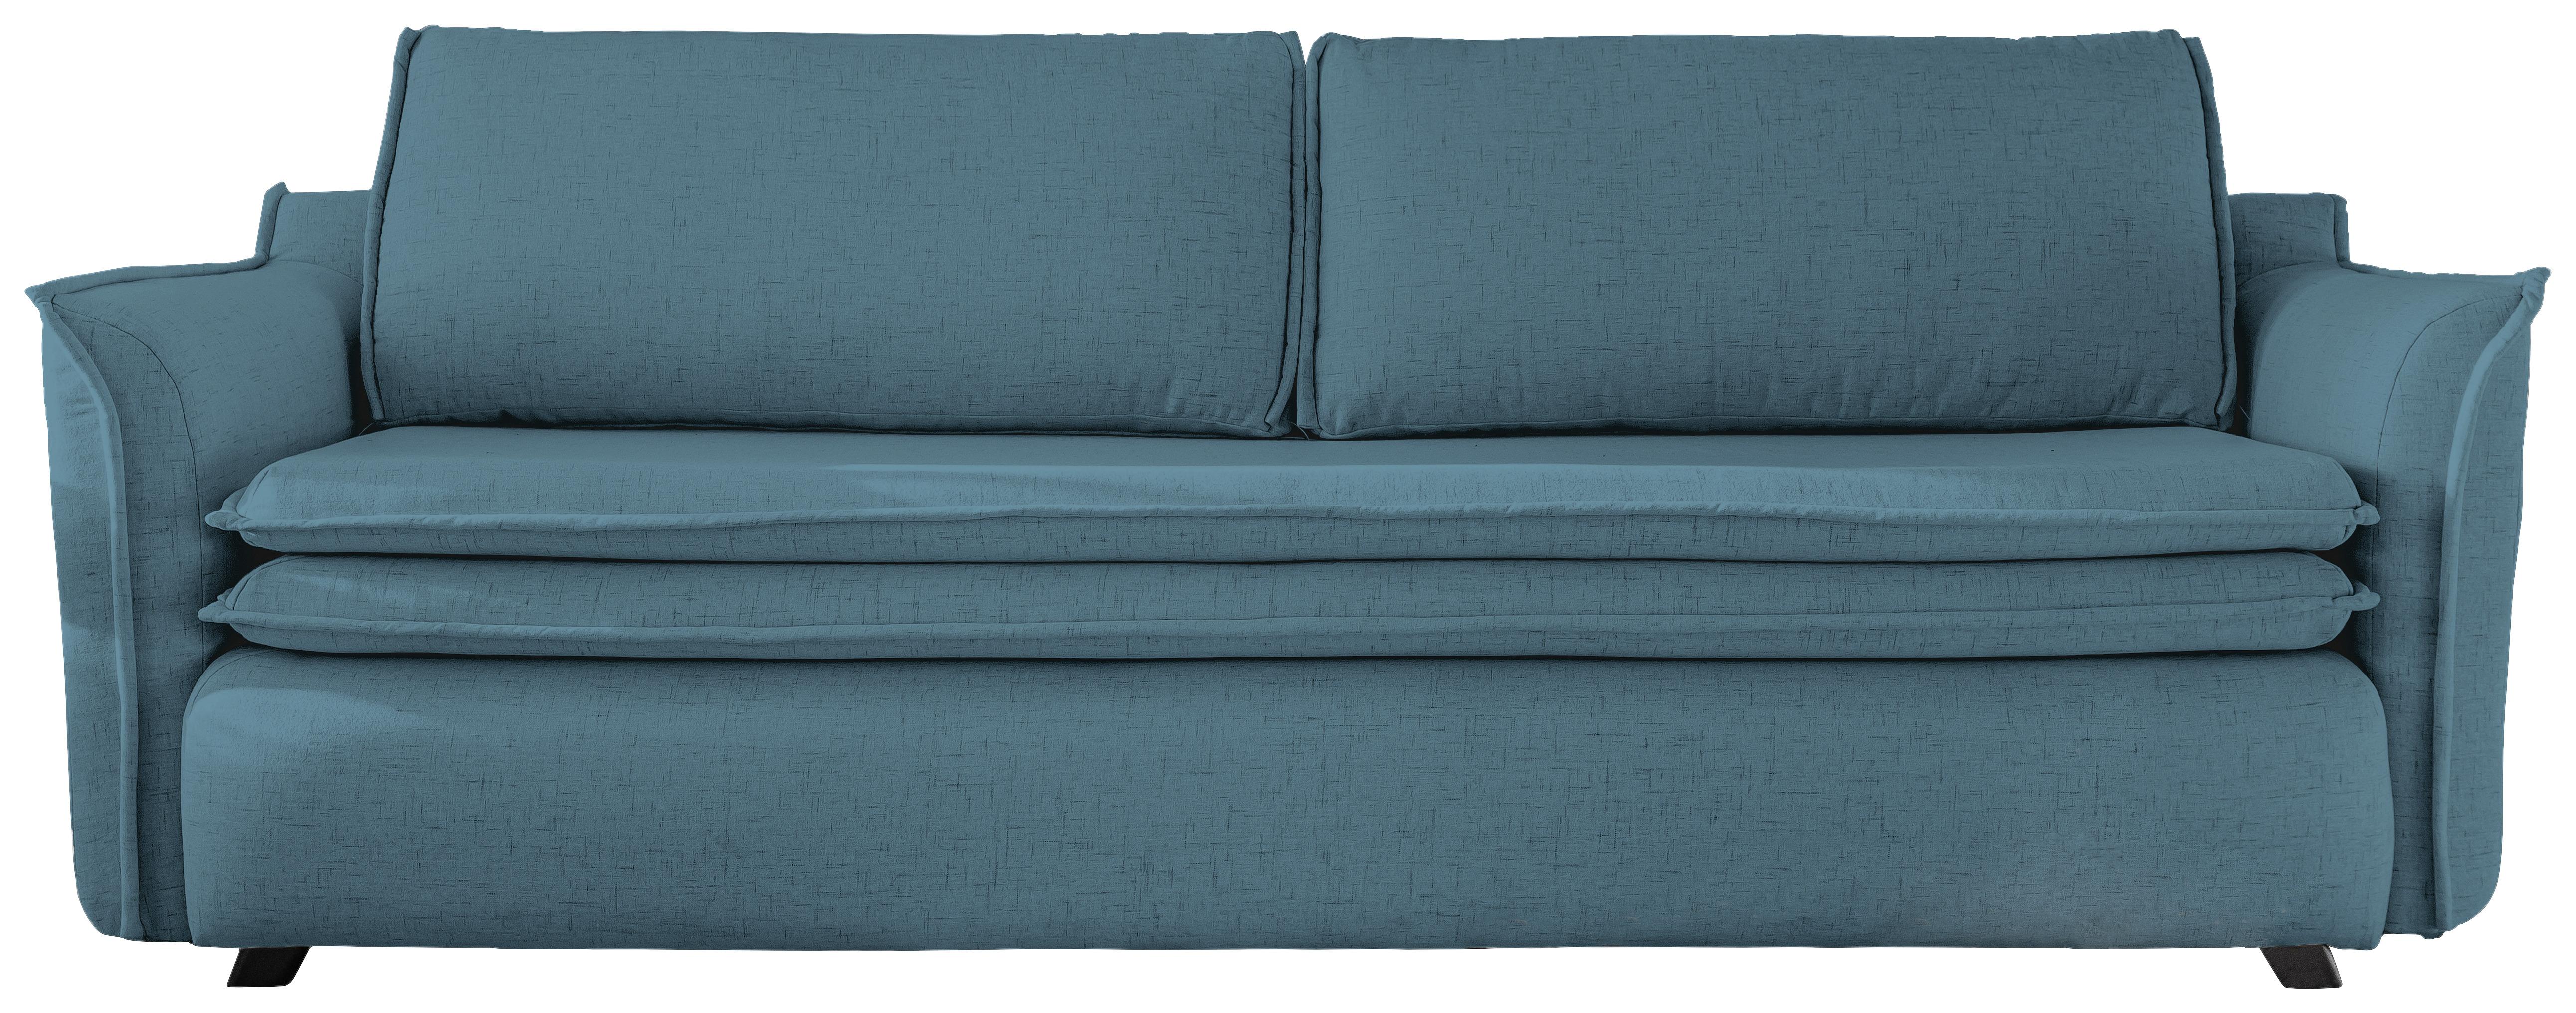 3-Sitzer-Sofa Mit Schlaffunktion und Bettkasten Charming Charlie - Blau/Petrol, Basics, Textil (225/85/90cm) - MID.YOU